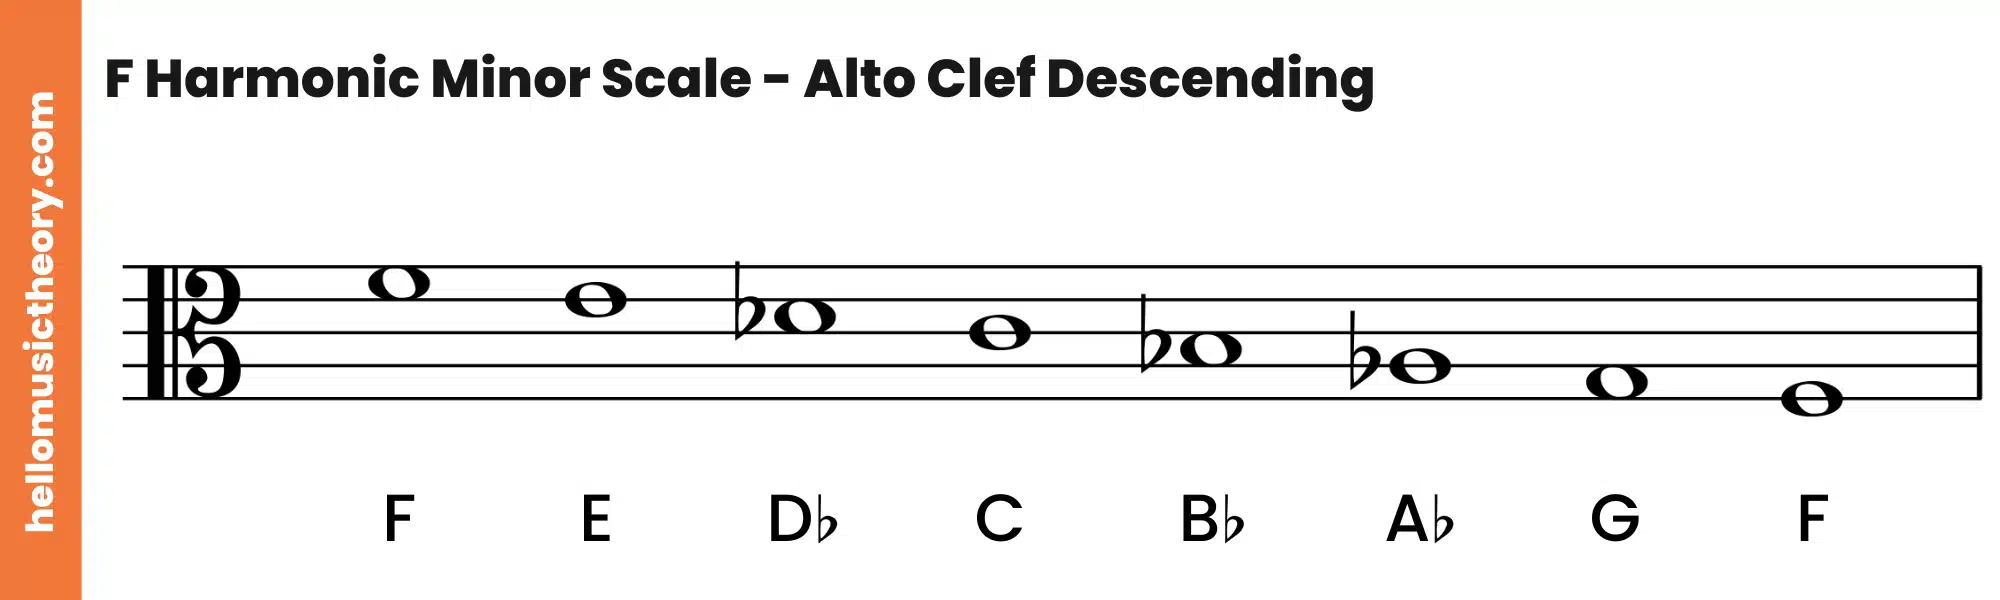 F Harmonic Minor Scale Alto Clef Descending